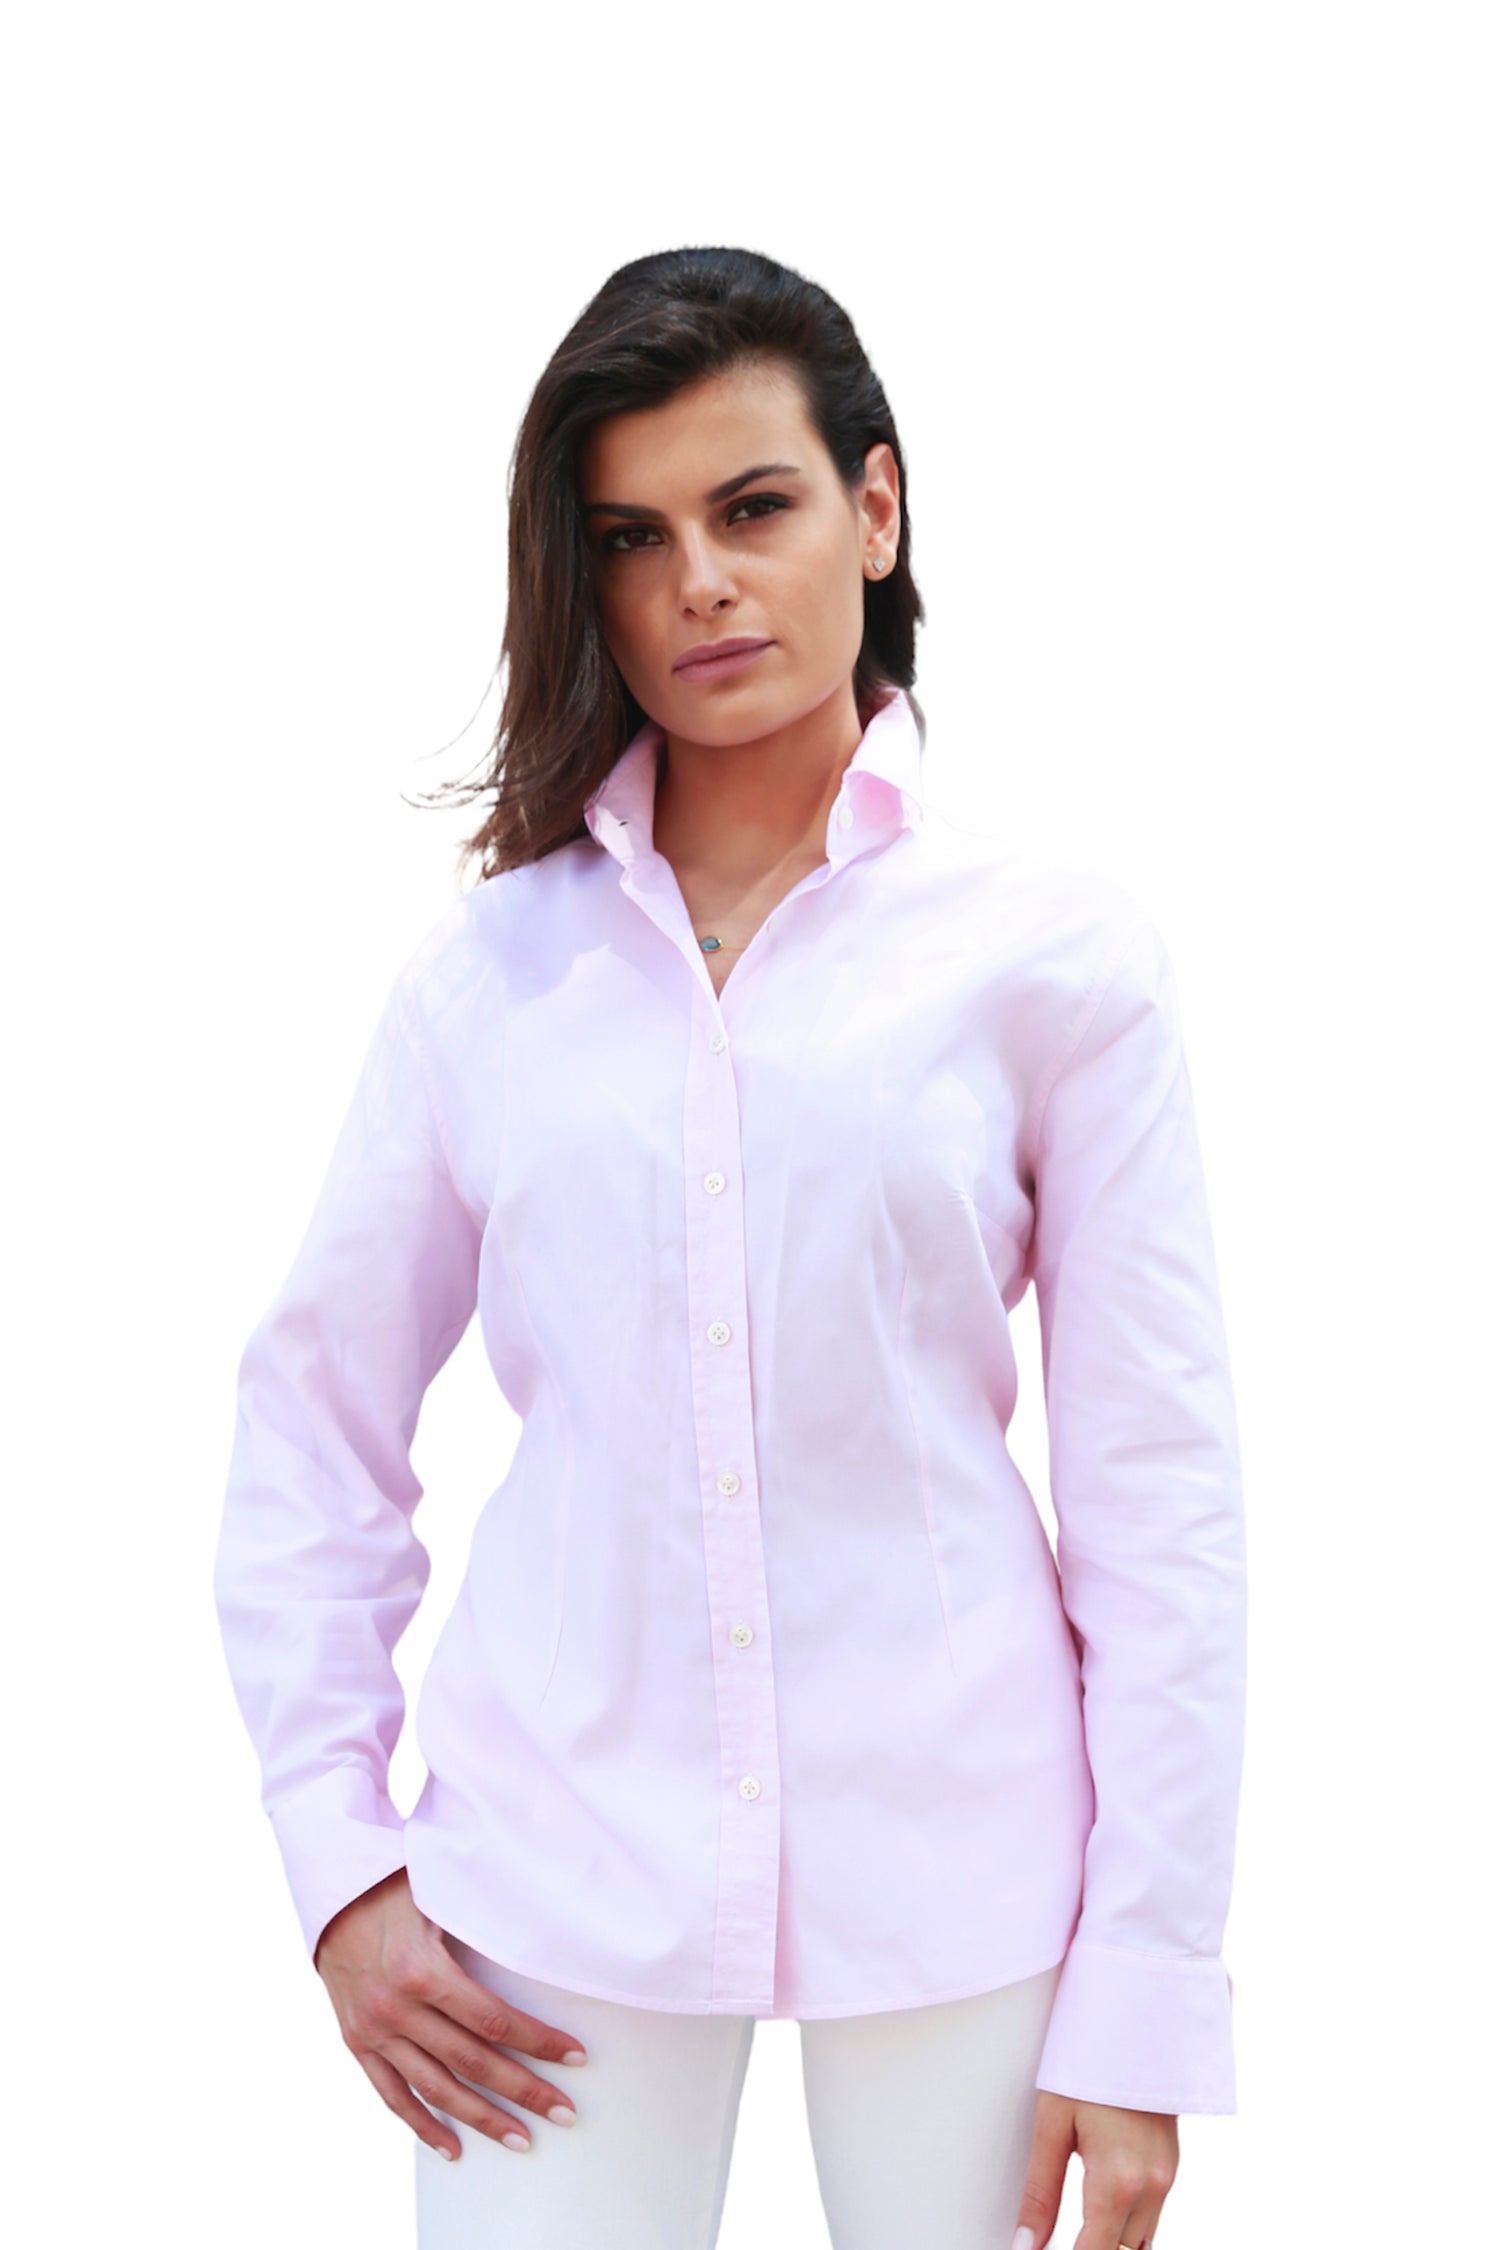 Buy Italian Cotton Shirts Cotton Shirts for Women Online